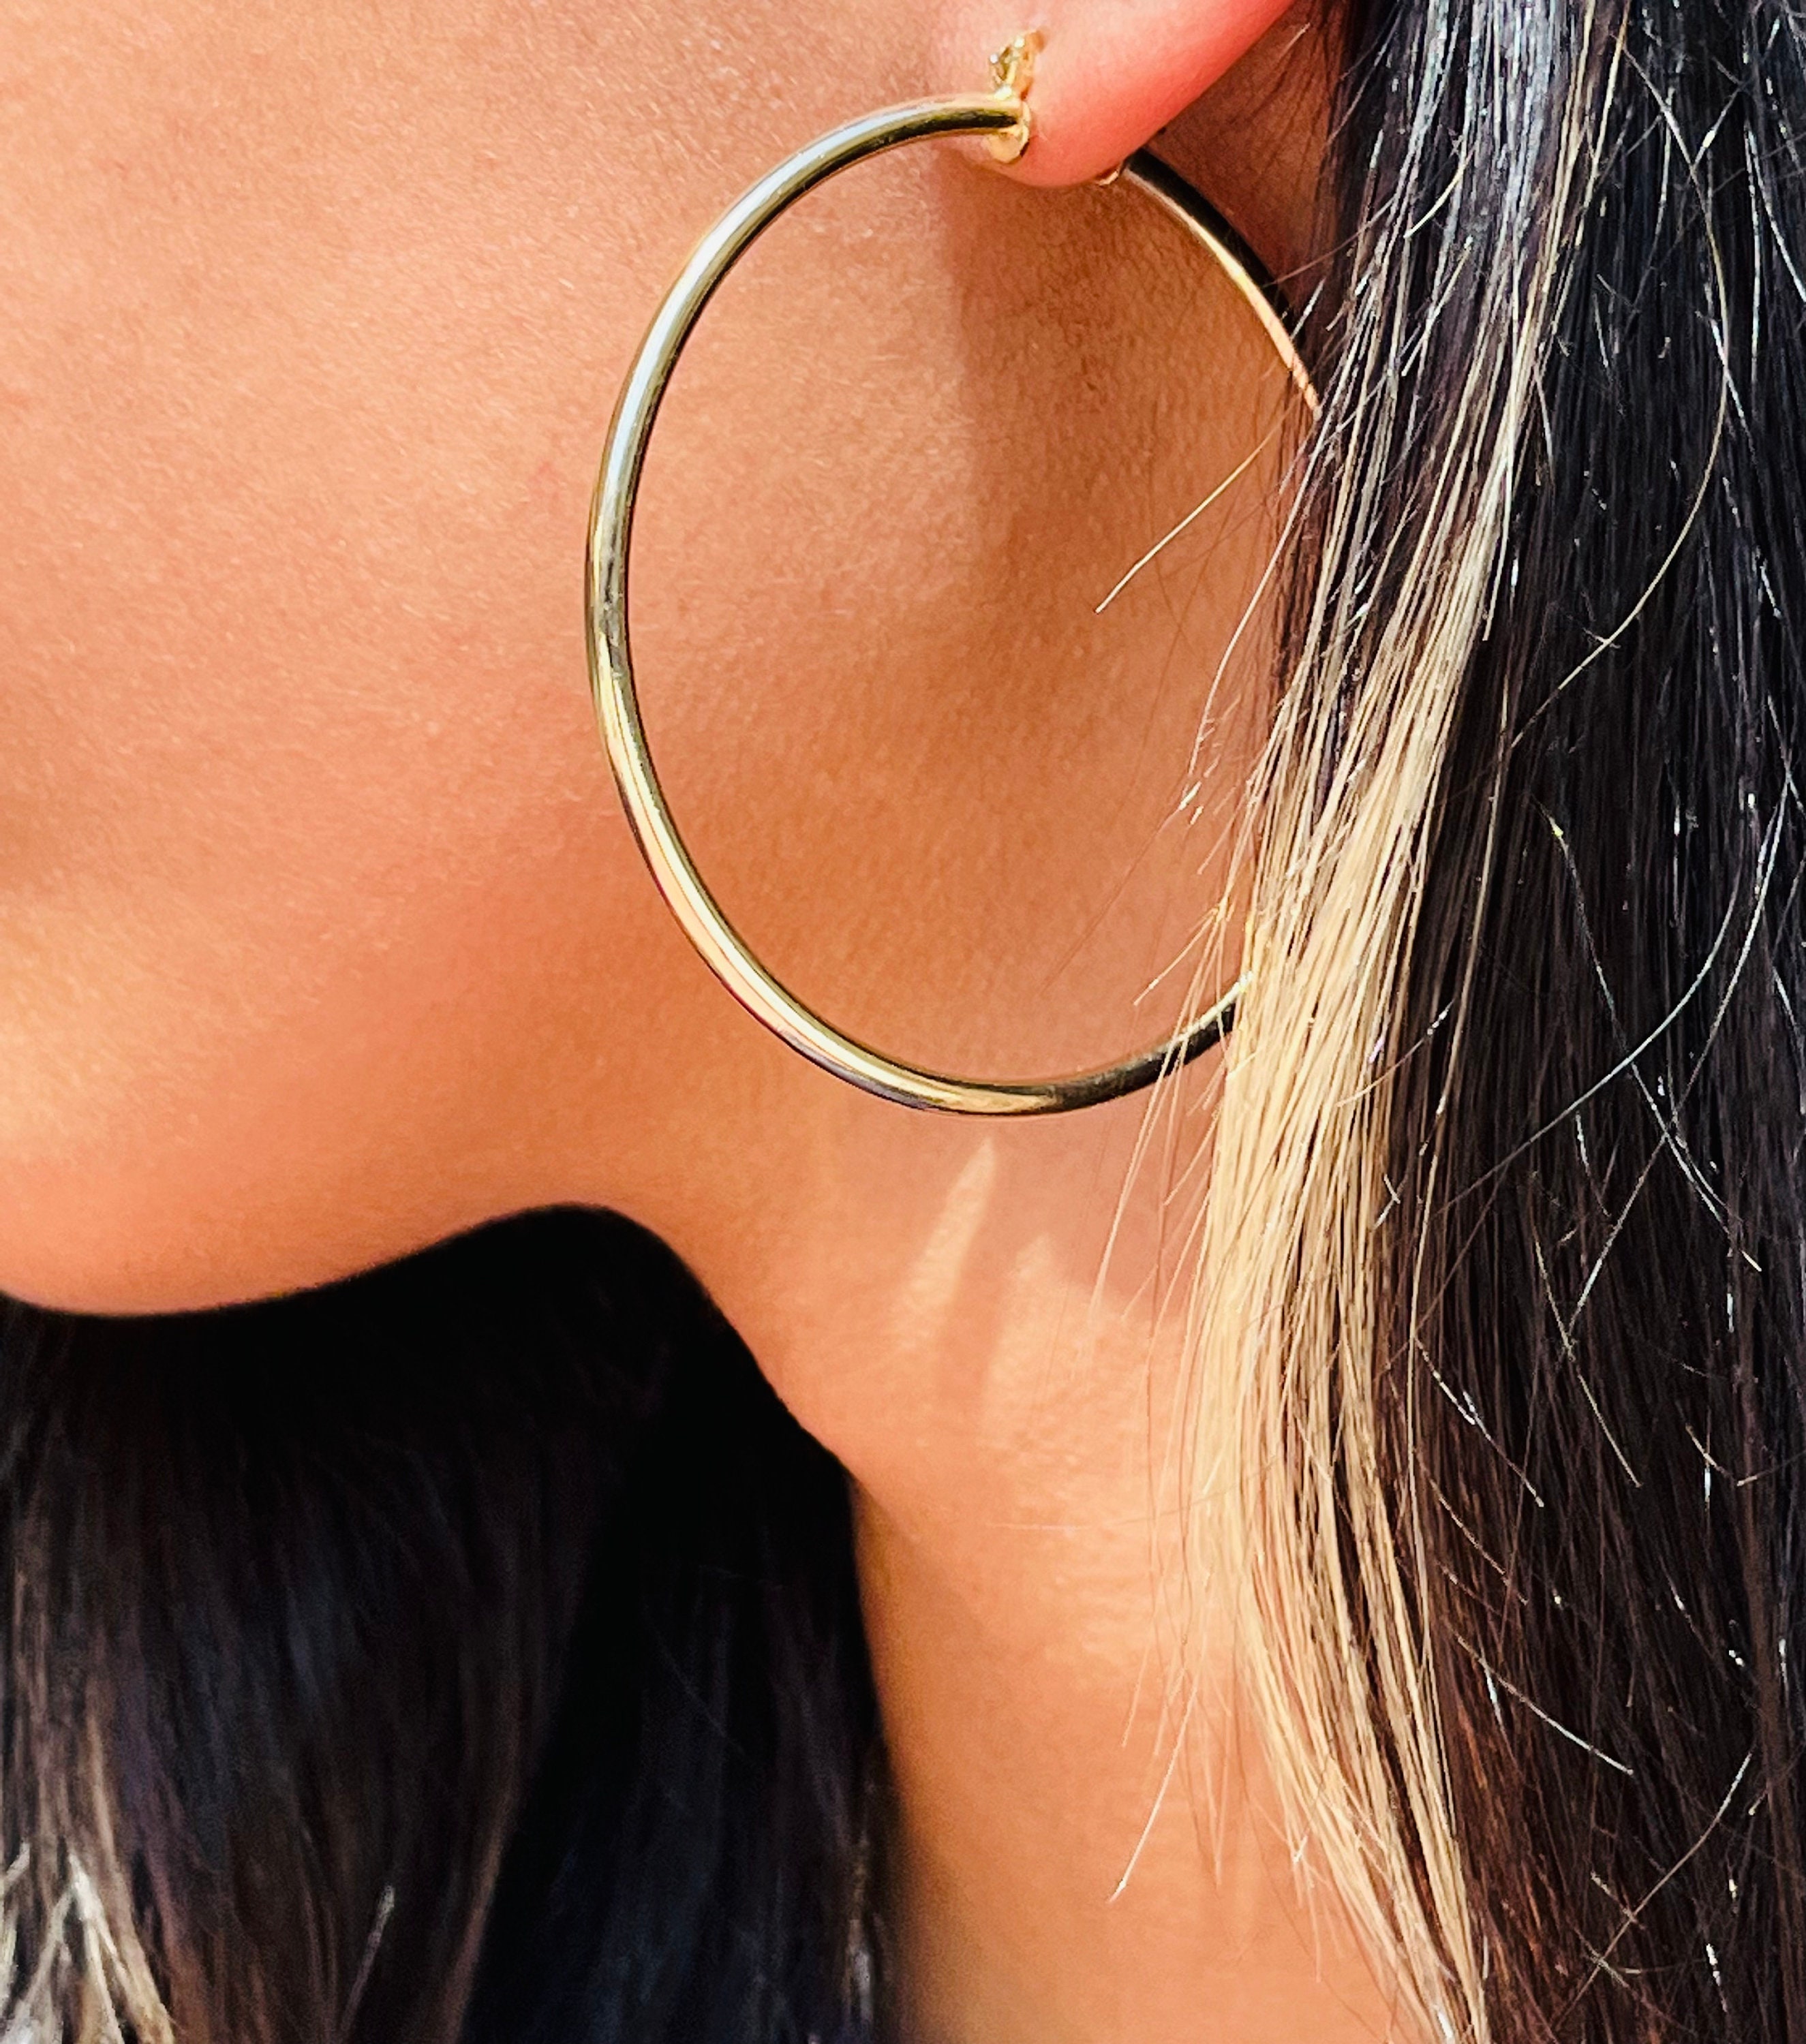 Buy Chunky Hoop Earrings, Large Circular Earrings, Gold Big Hoops,  Statement Earrings, Laka Luka Design chunky Hoops Online in India - Etsy